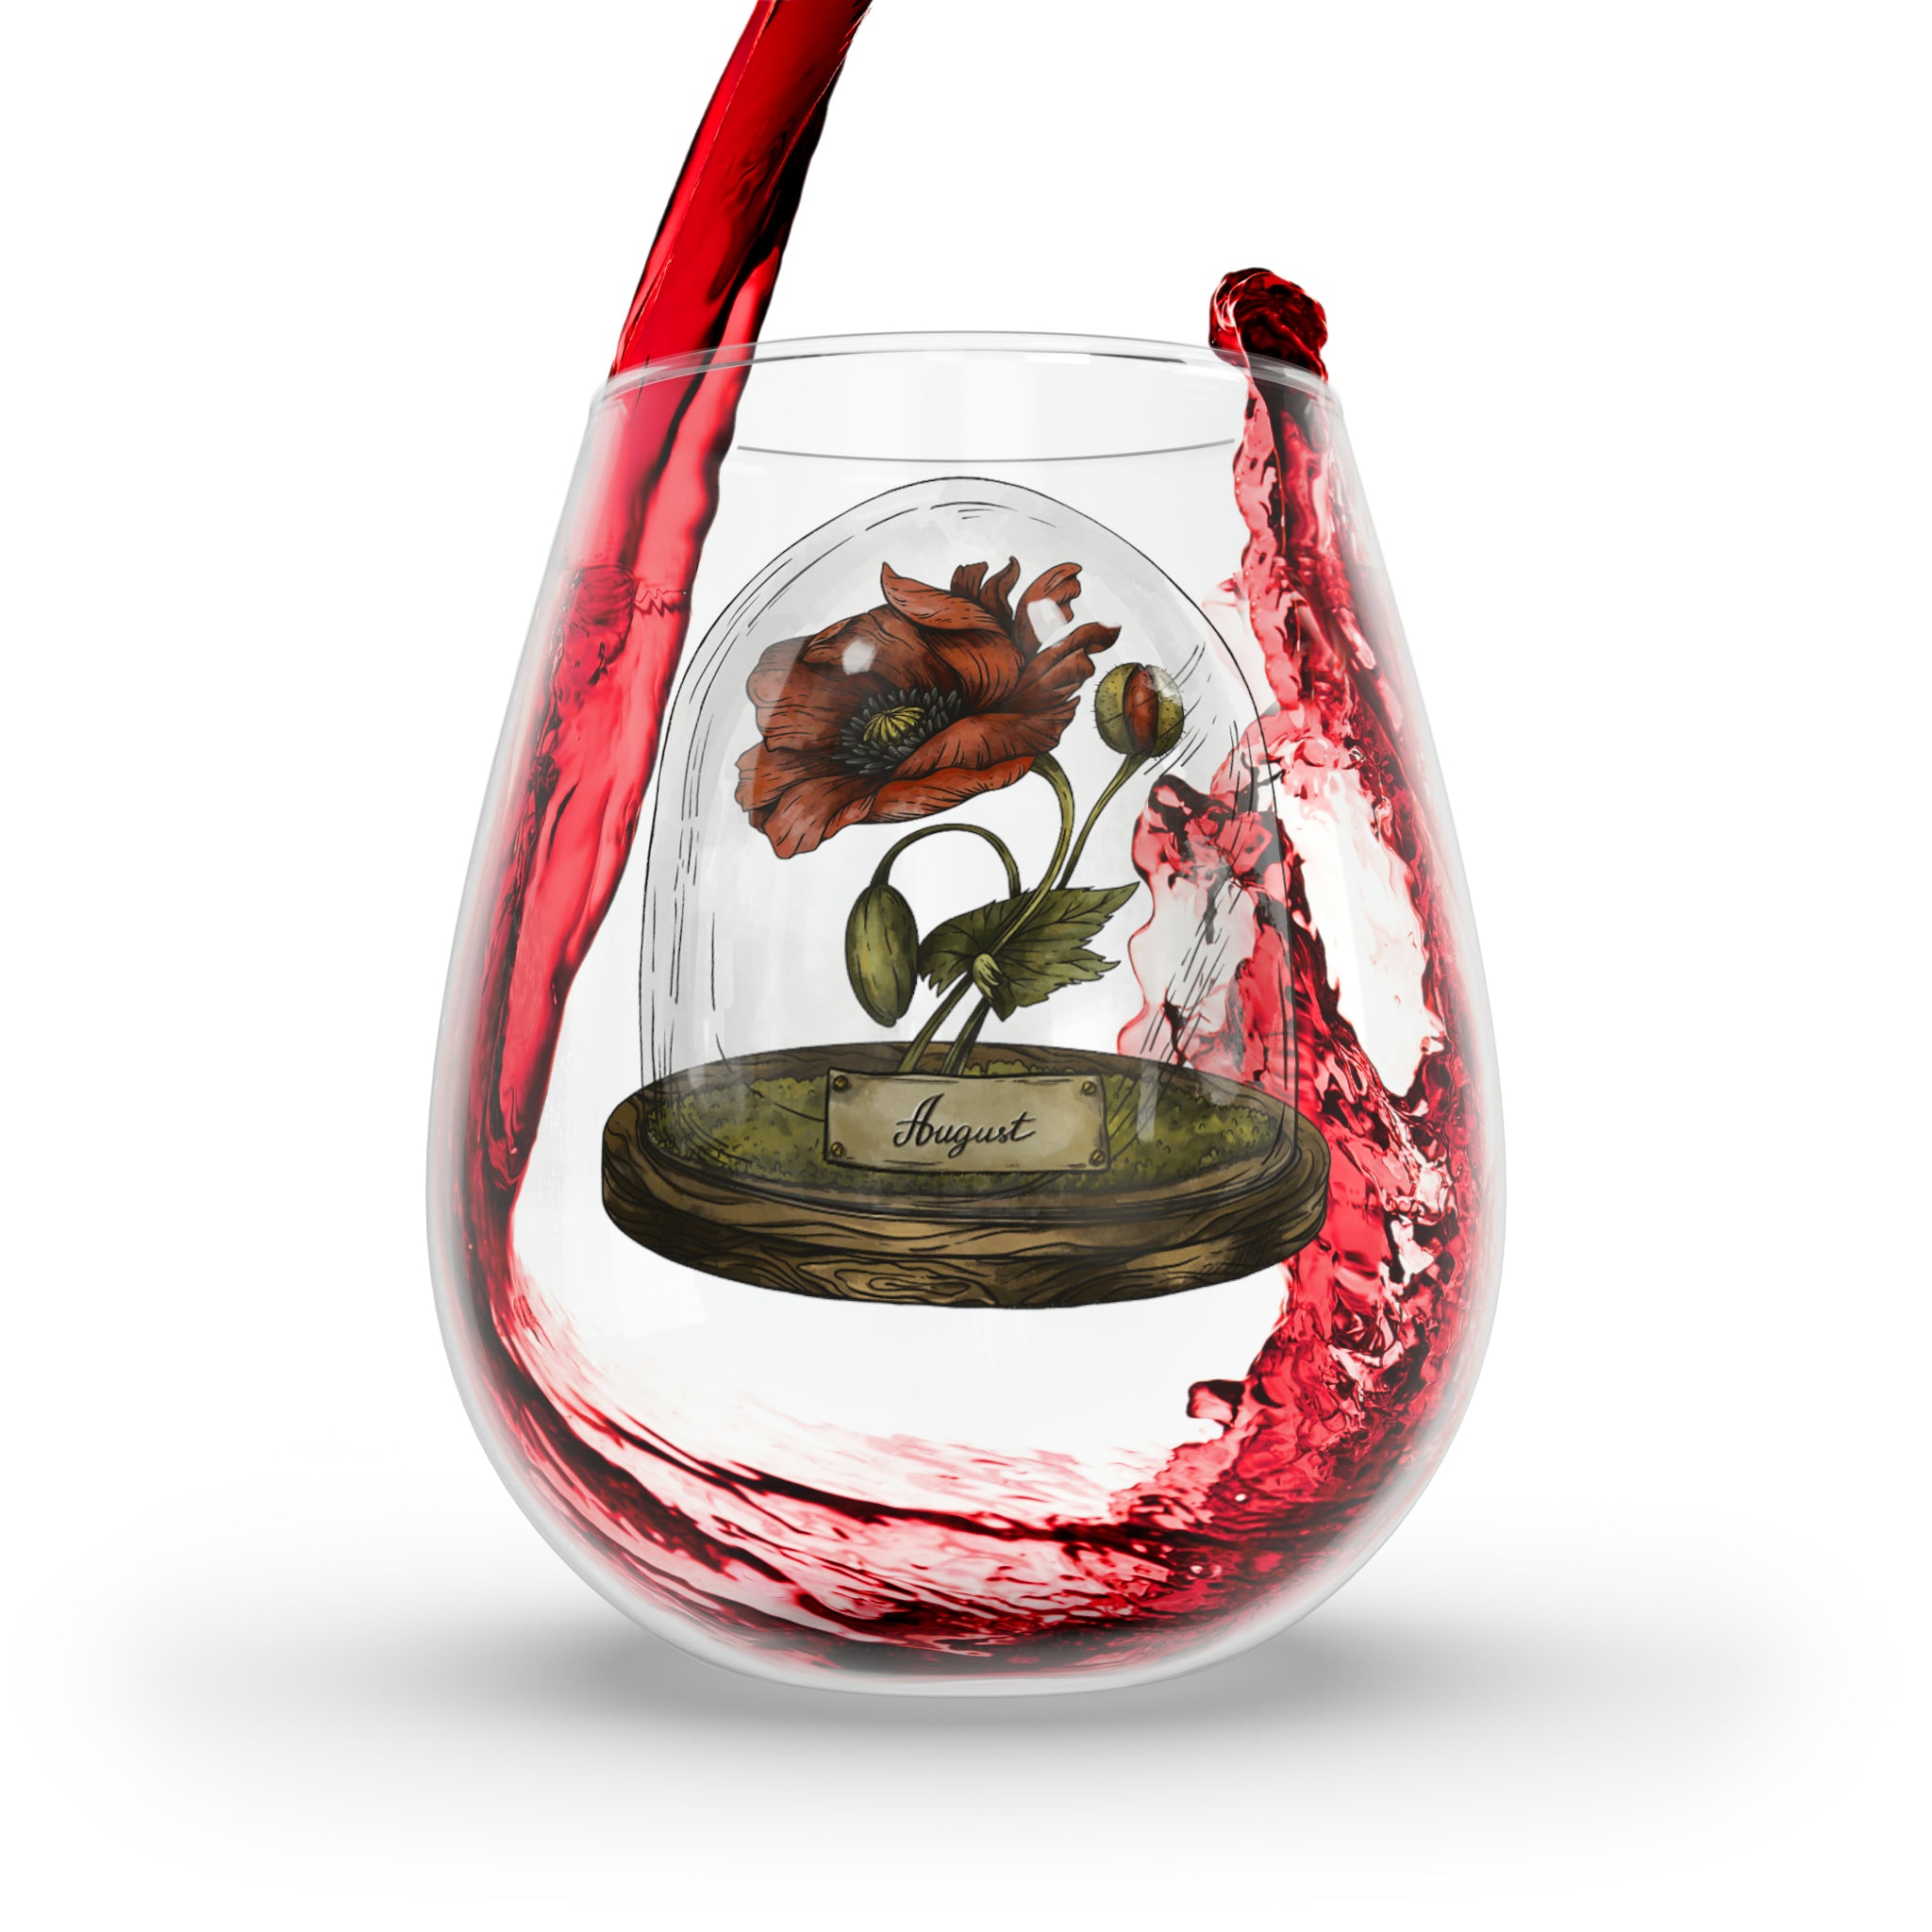 August Birth Flower - Stemless Wine Glass, 11.75oz